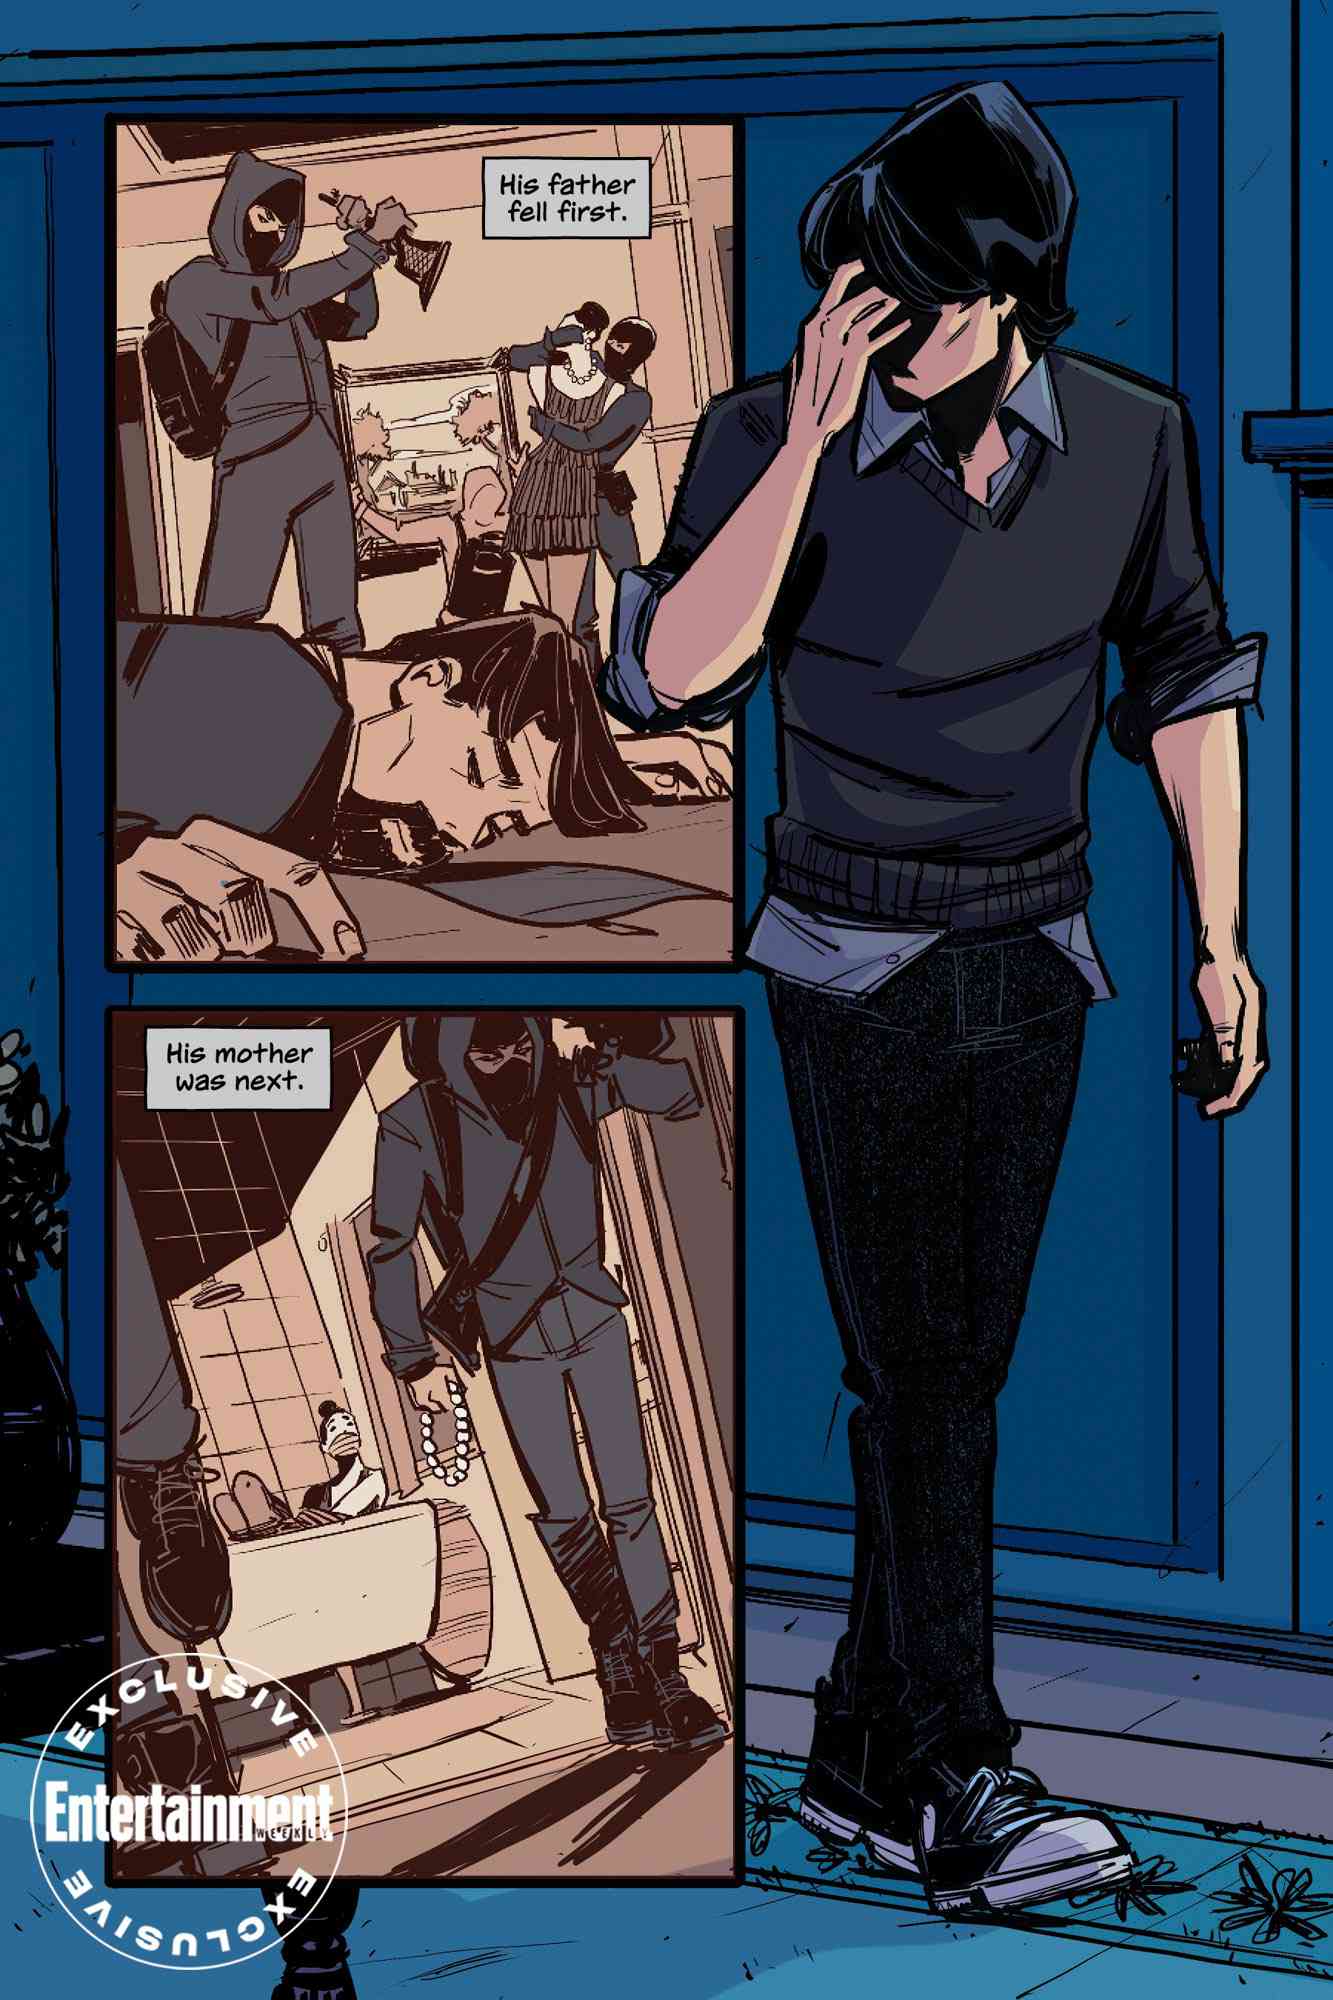 Gotham High first look: Batman meets Gossip Girl in graphic novel 